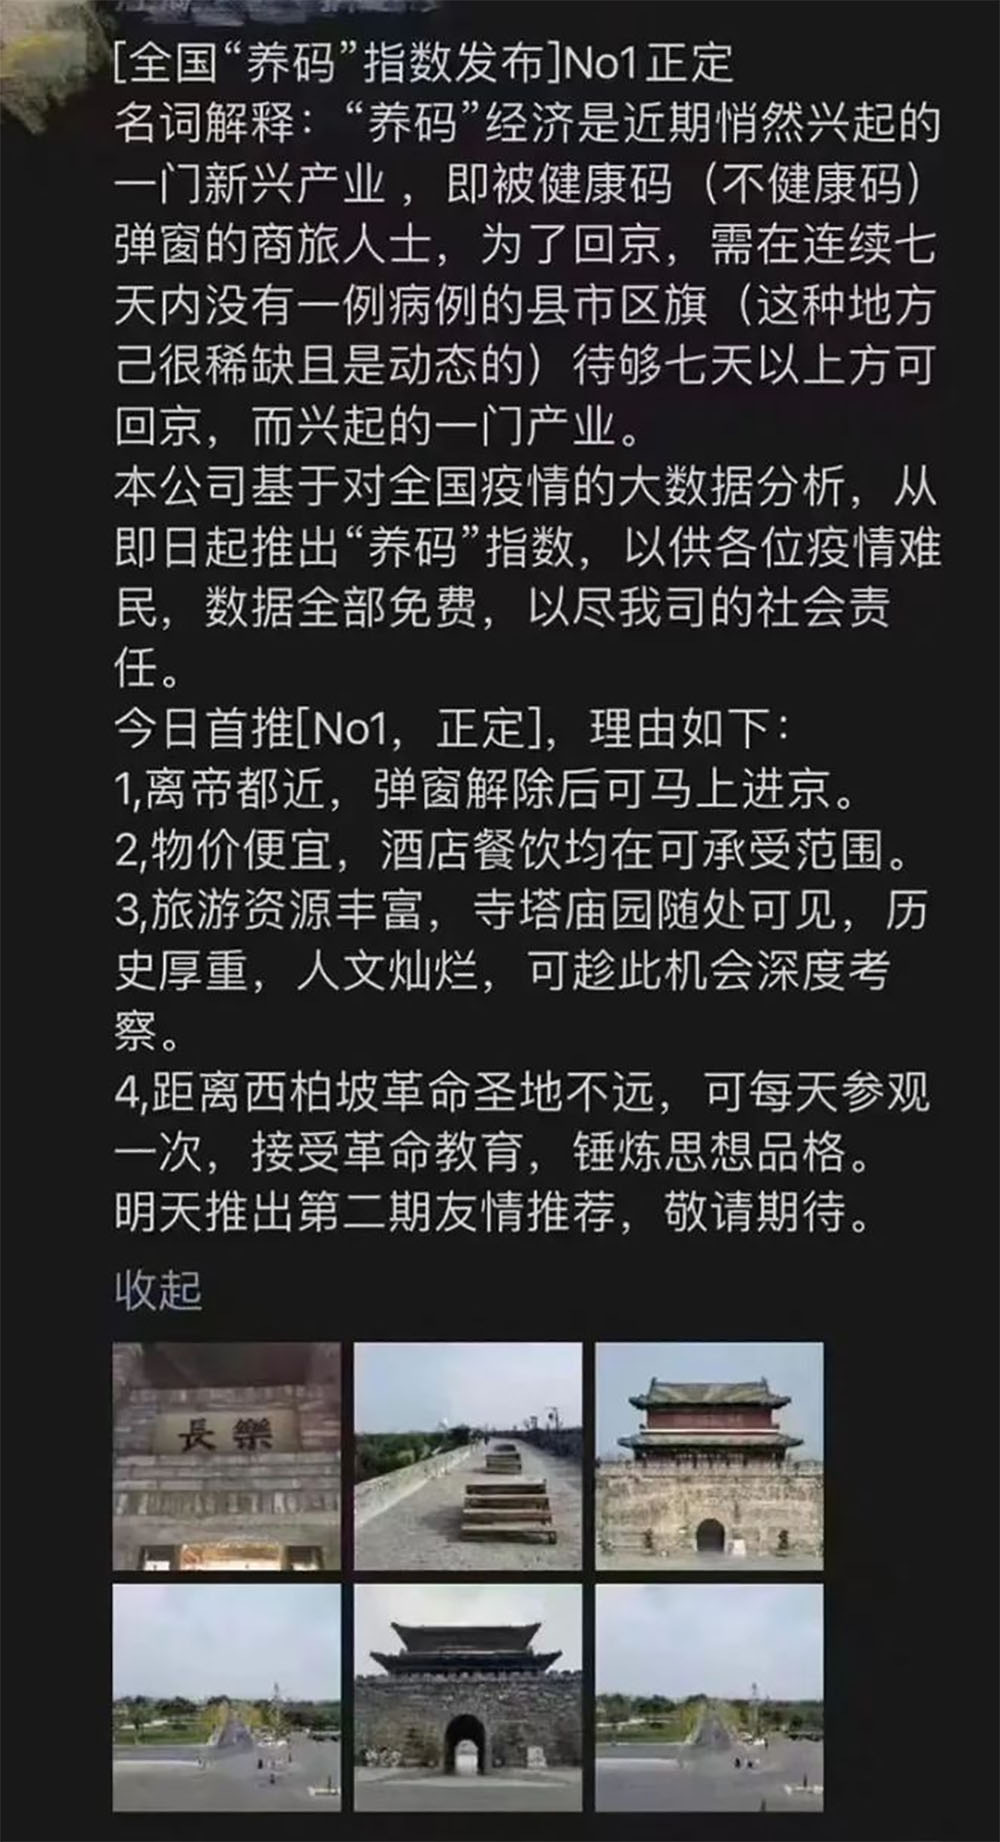 网民解释推荐河北石家庄的正定县的原因。